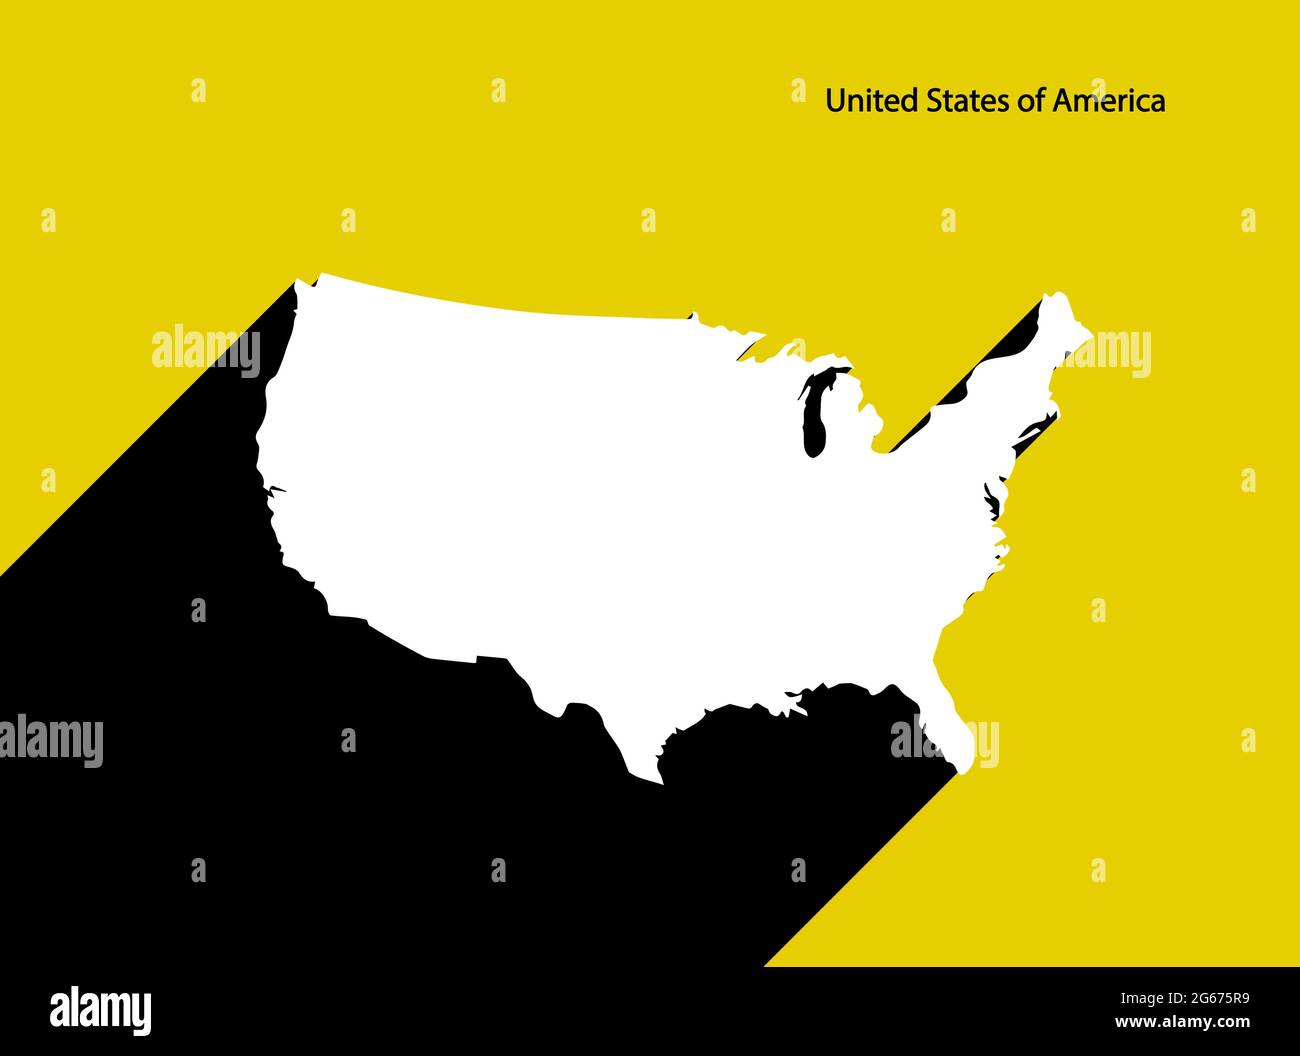 Vereinigte Staaten von Amerika Karte auf Retro-Poster mit langem Schatten. Vintage-Zeichen einfach zu bearbeiten, zu bearbeiten, zu ändern oder zu färben. Stock Vektor